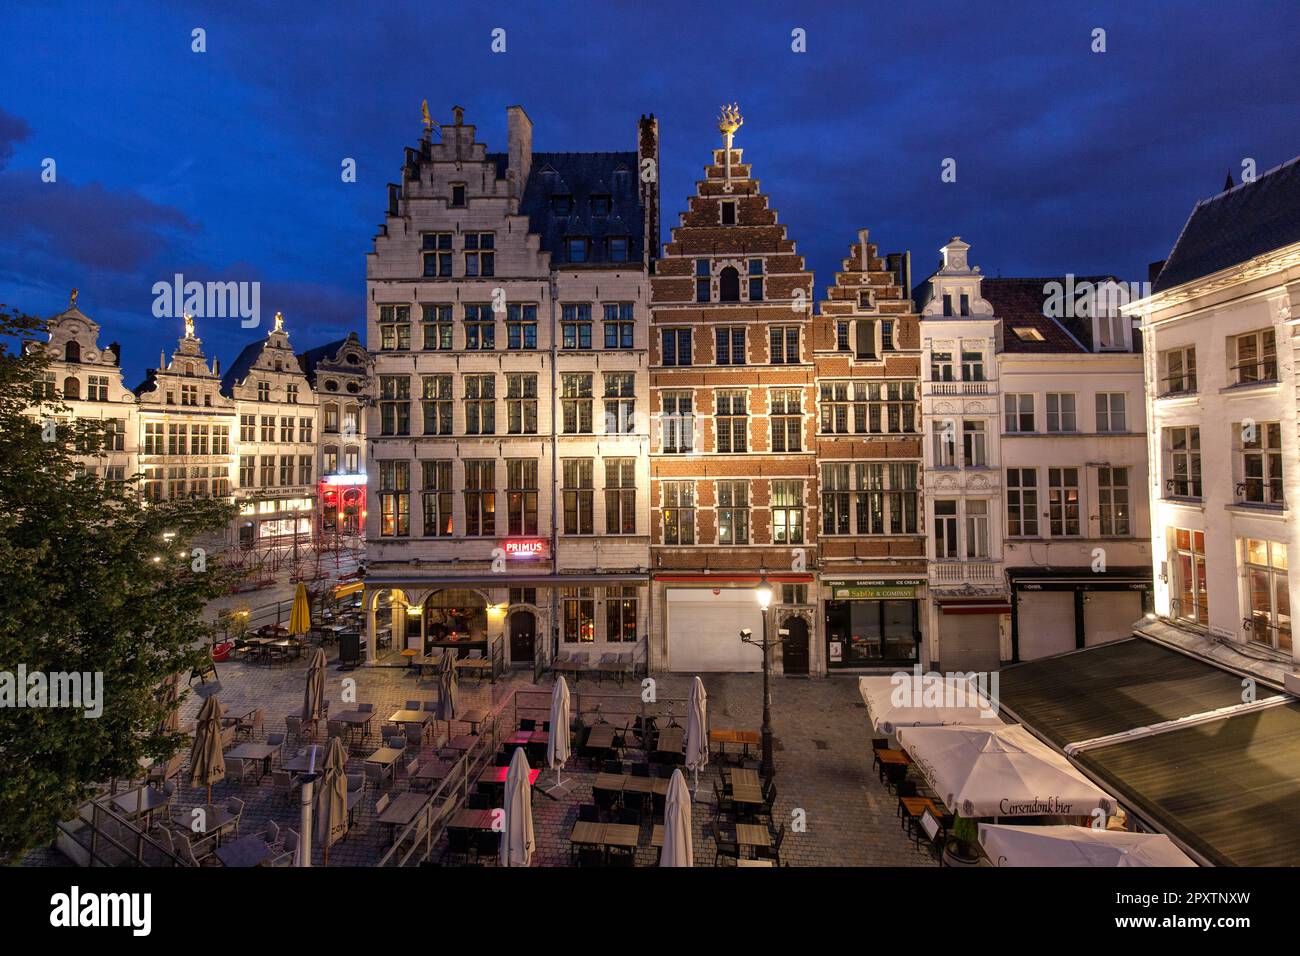 Historische Guildhalls in Grote Markt, Marktplatz in der Altstadt von Antwerpen mit Cafés und Restaurants in der Dämmerung oder in der Nacht. Stockfoto